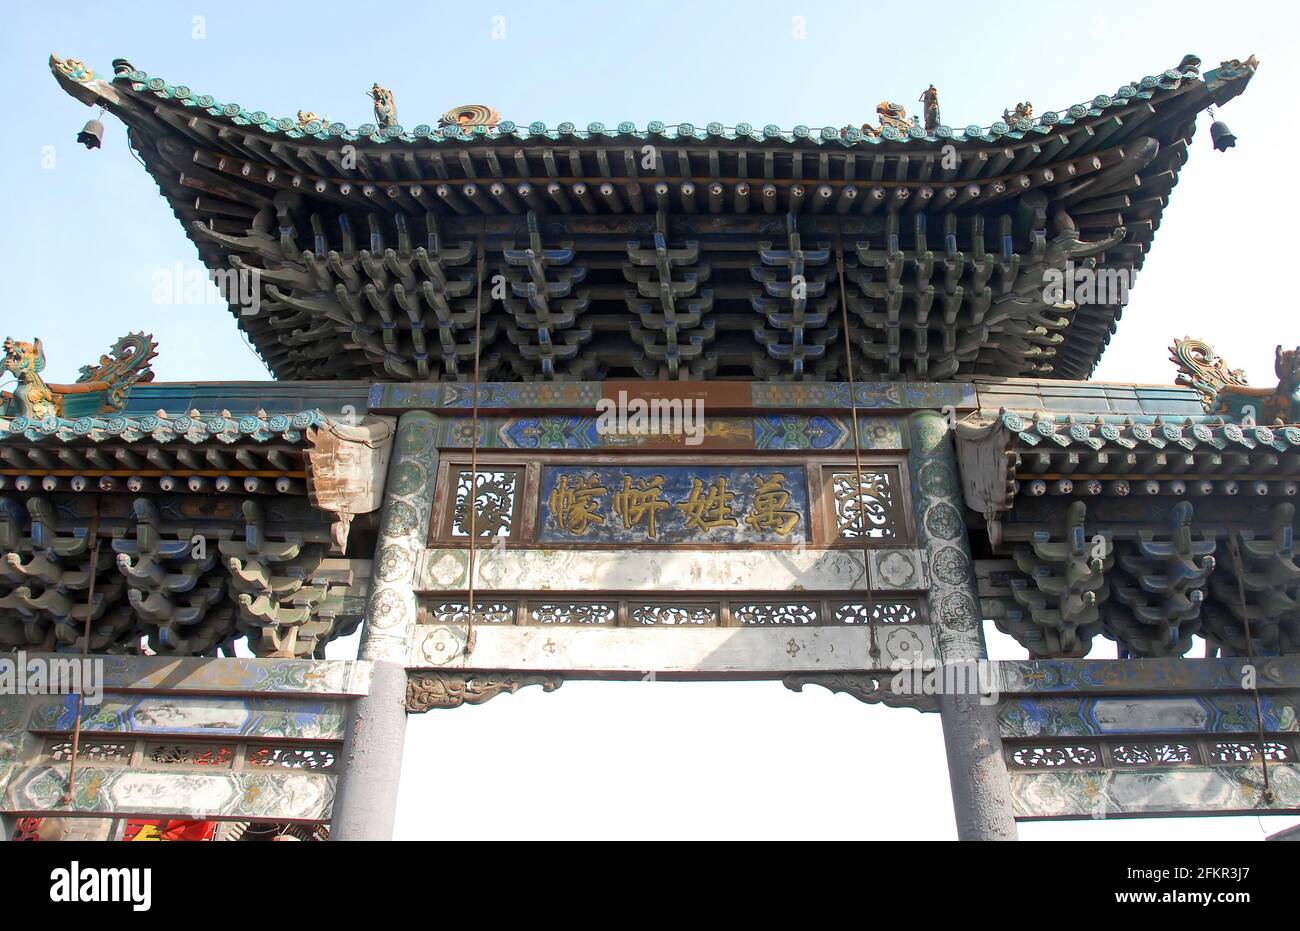 Pingyao dans la province du Shanxi, Chine : porte ornée sur une route à Pingyao. Cette structure a des caractéristiques traditionnelles chinoises Banque D'Images